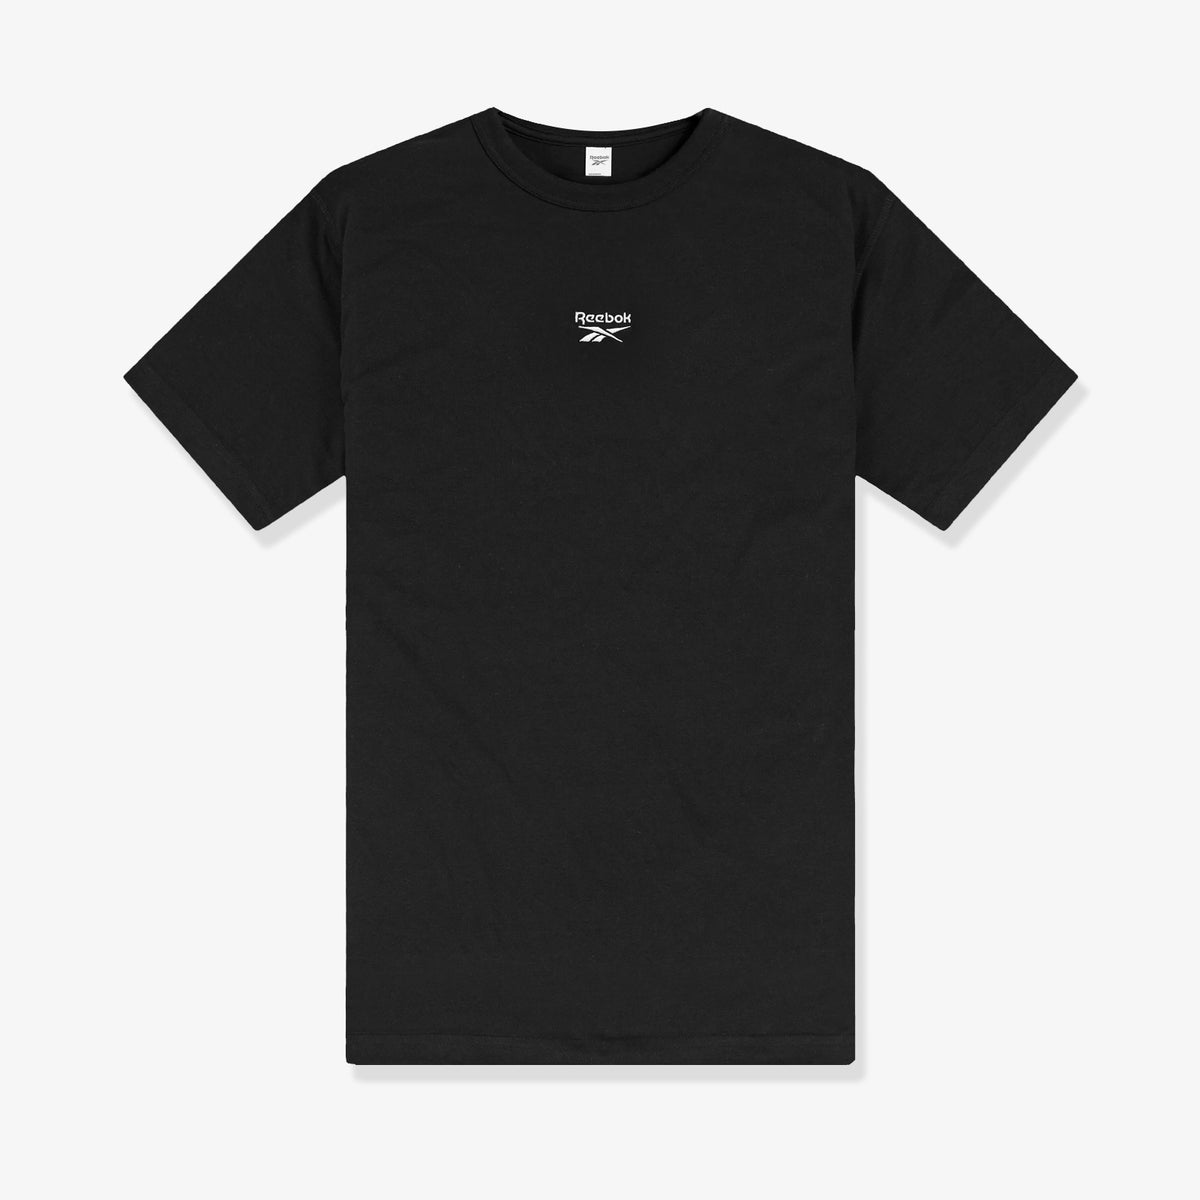 Classics Small Vector T-Shirt - Black